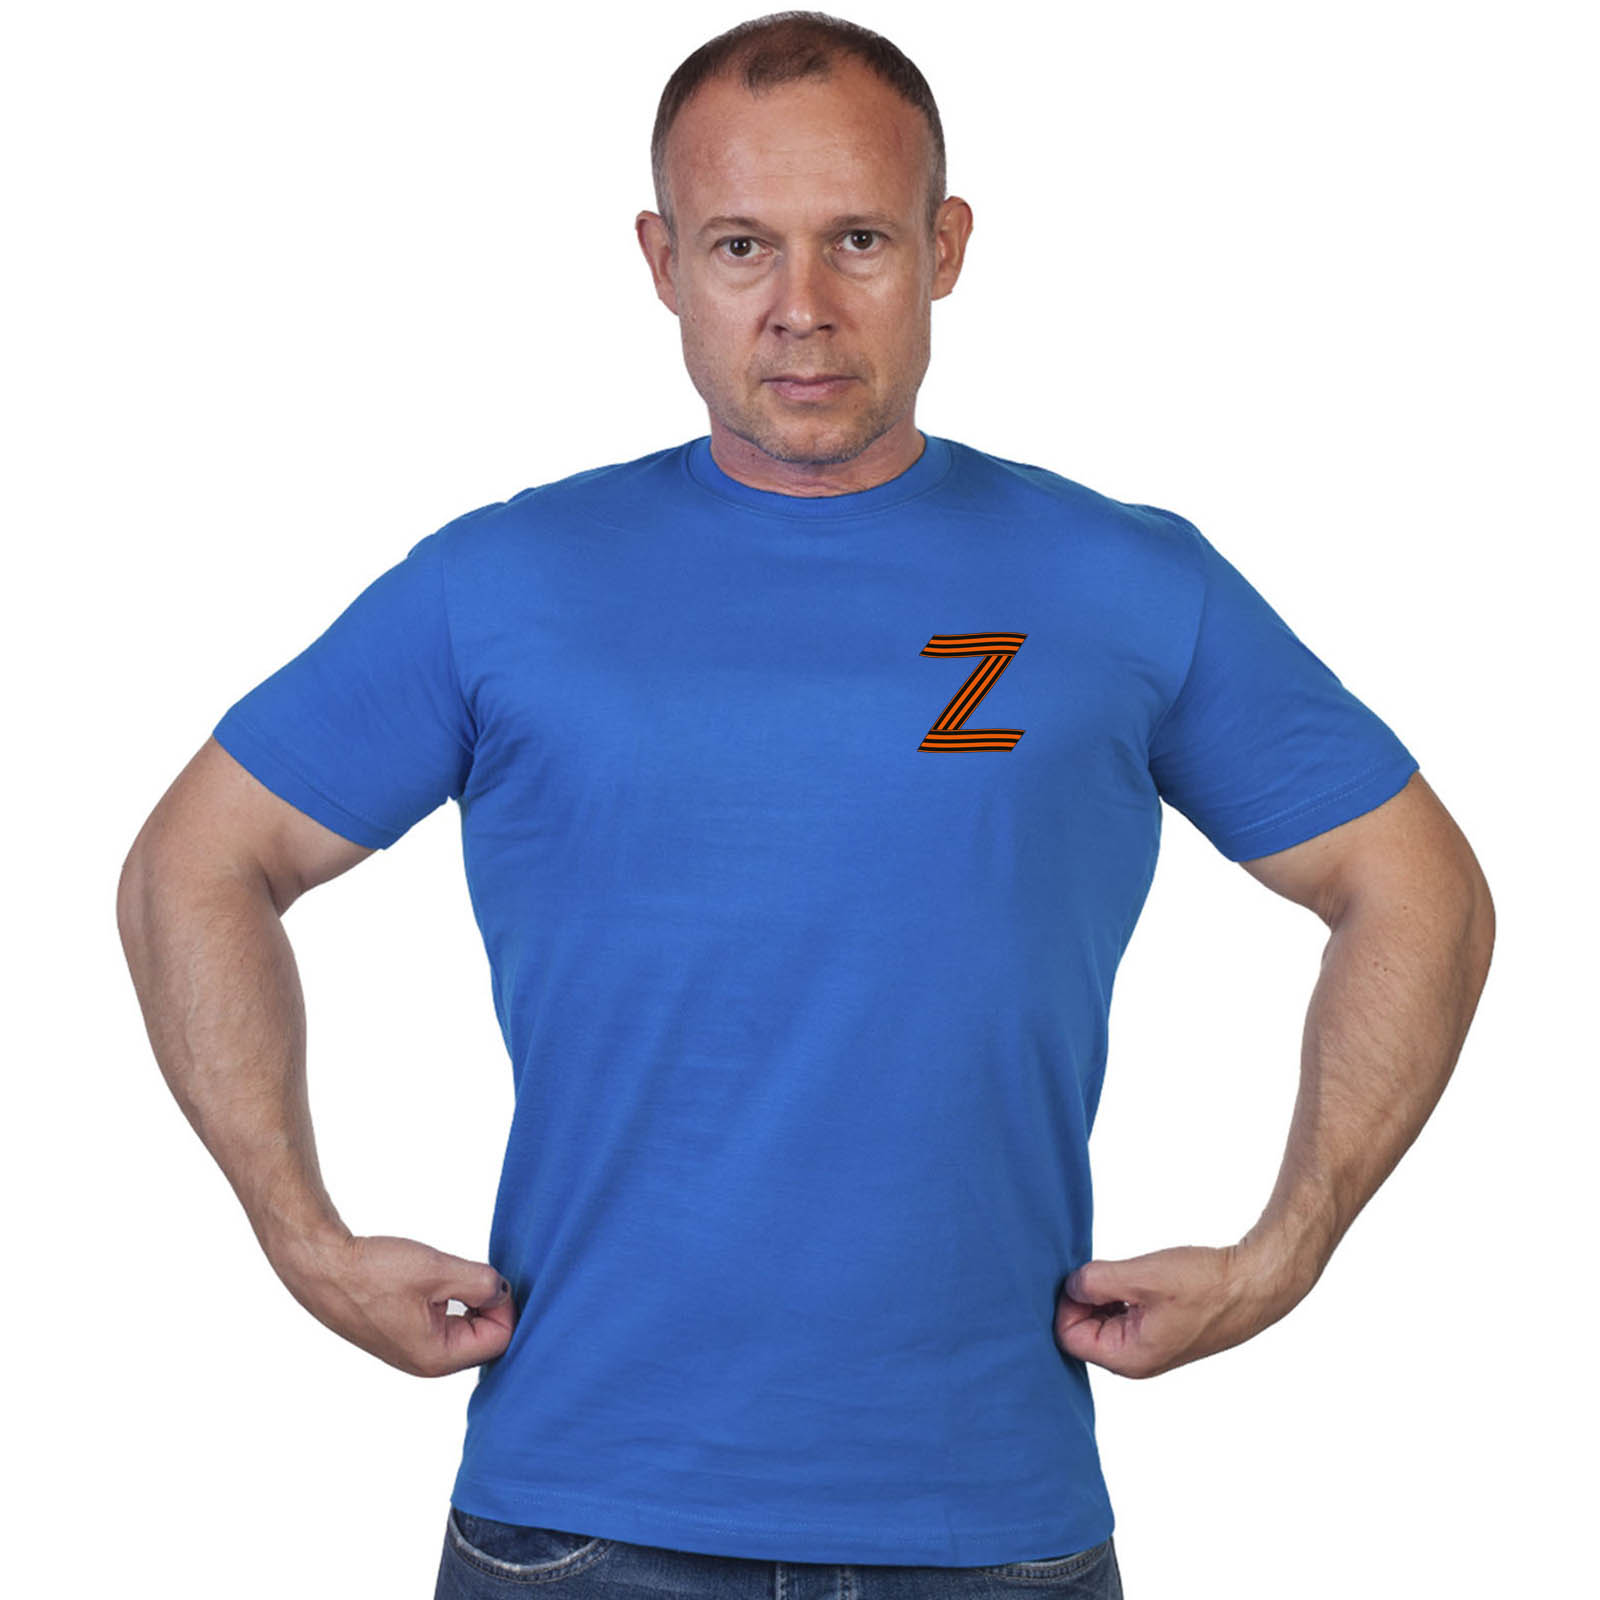 Васильковая футболка с термотрансфером участнику Операции «Z»